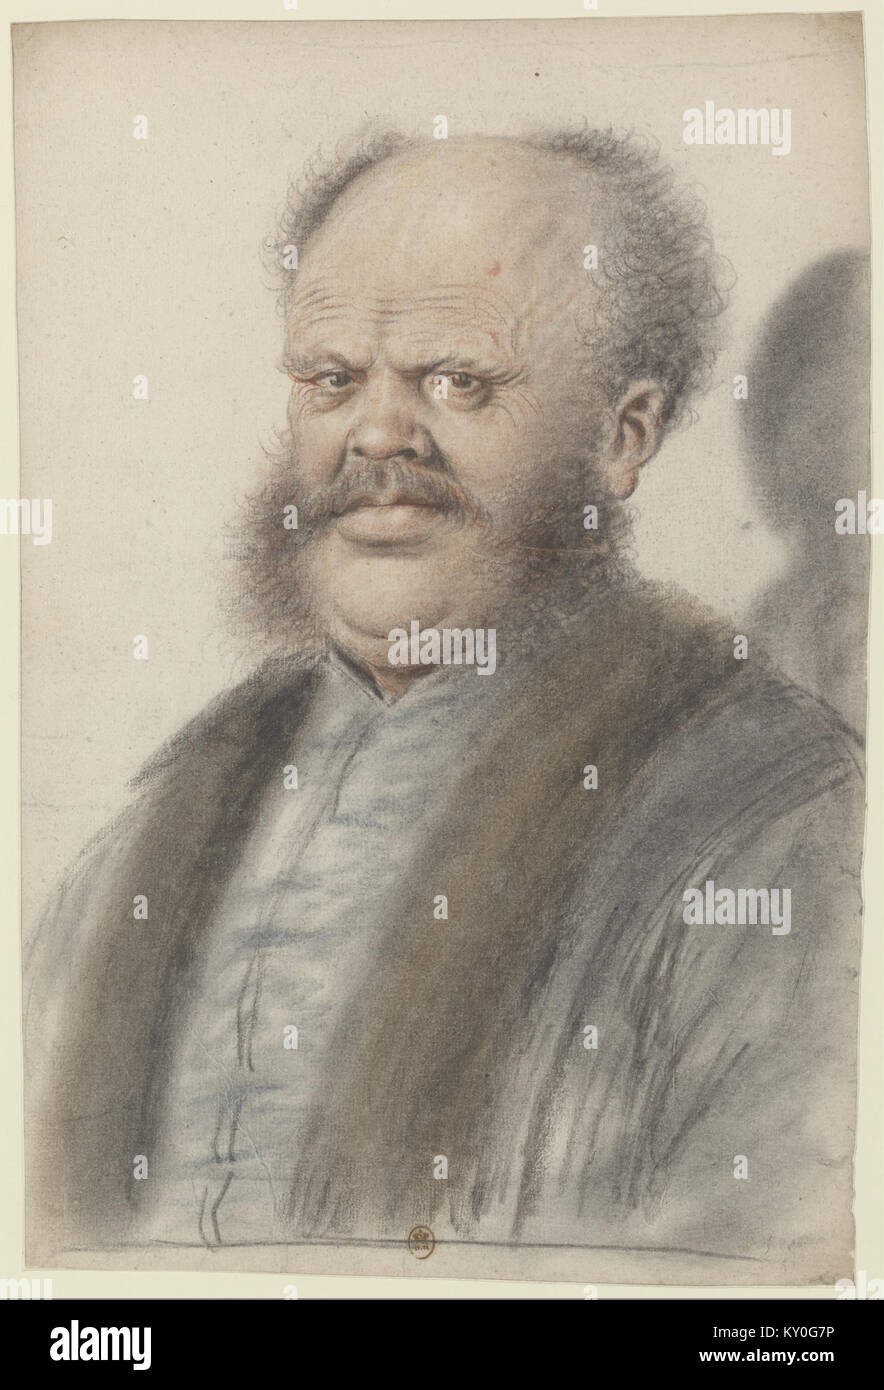 Homme au crâne dégarni, portant moustaches et larges pattes de cheveux descendant sur les joues, vu presque de face (Nicolas Lagneau) Stock Photo